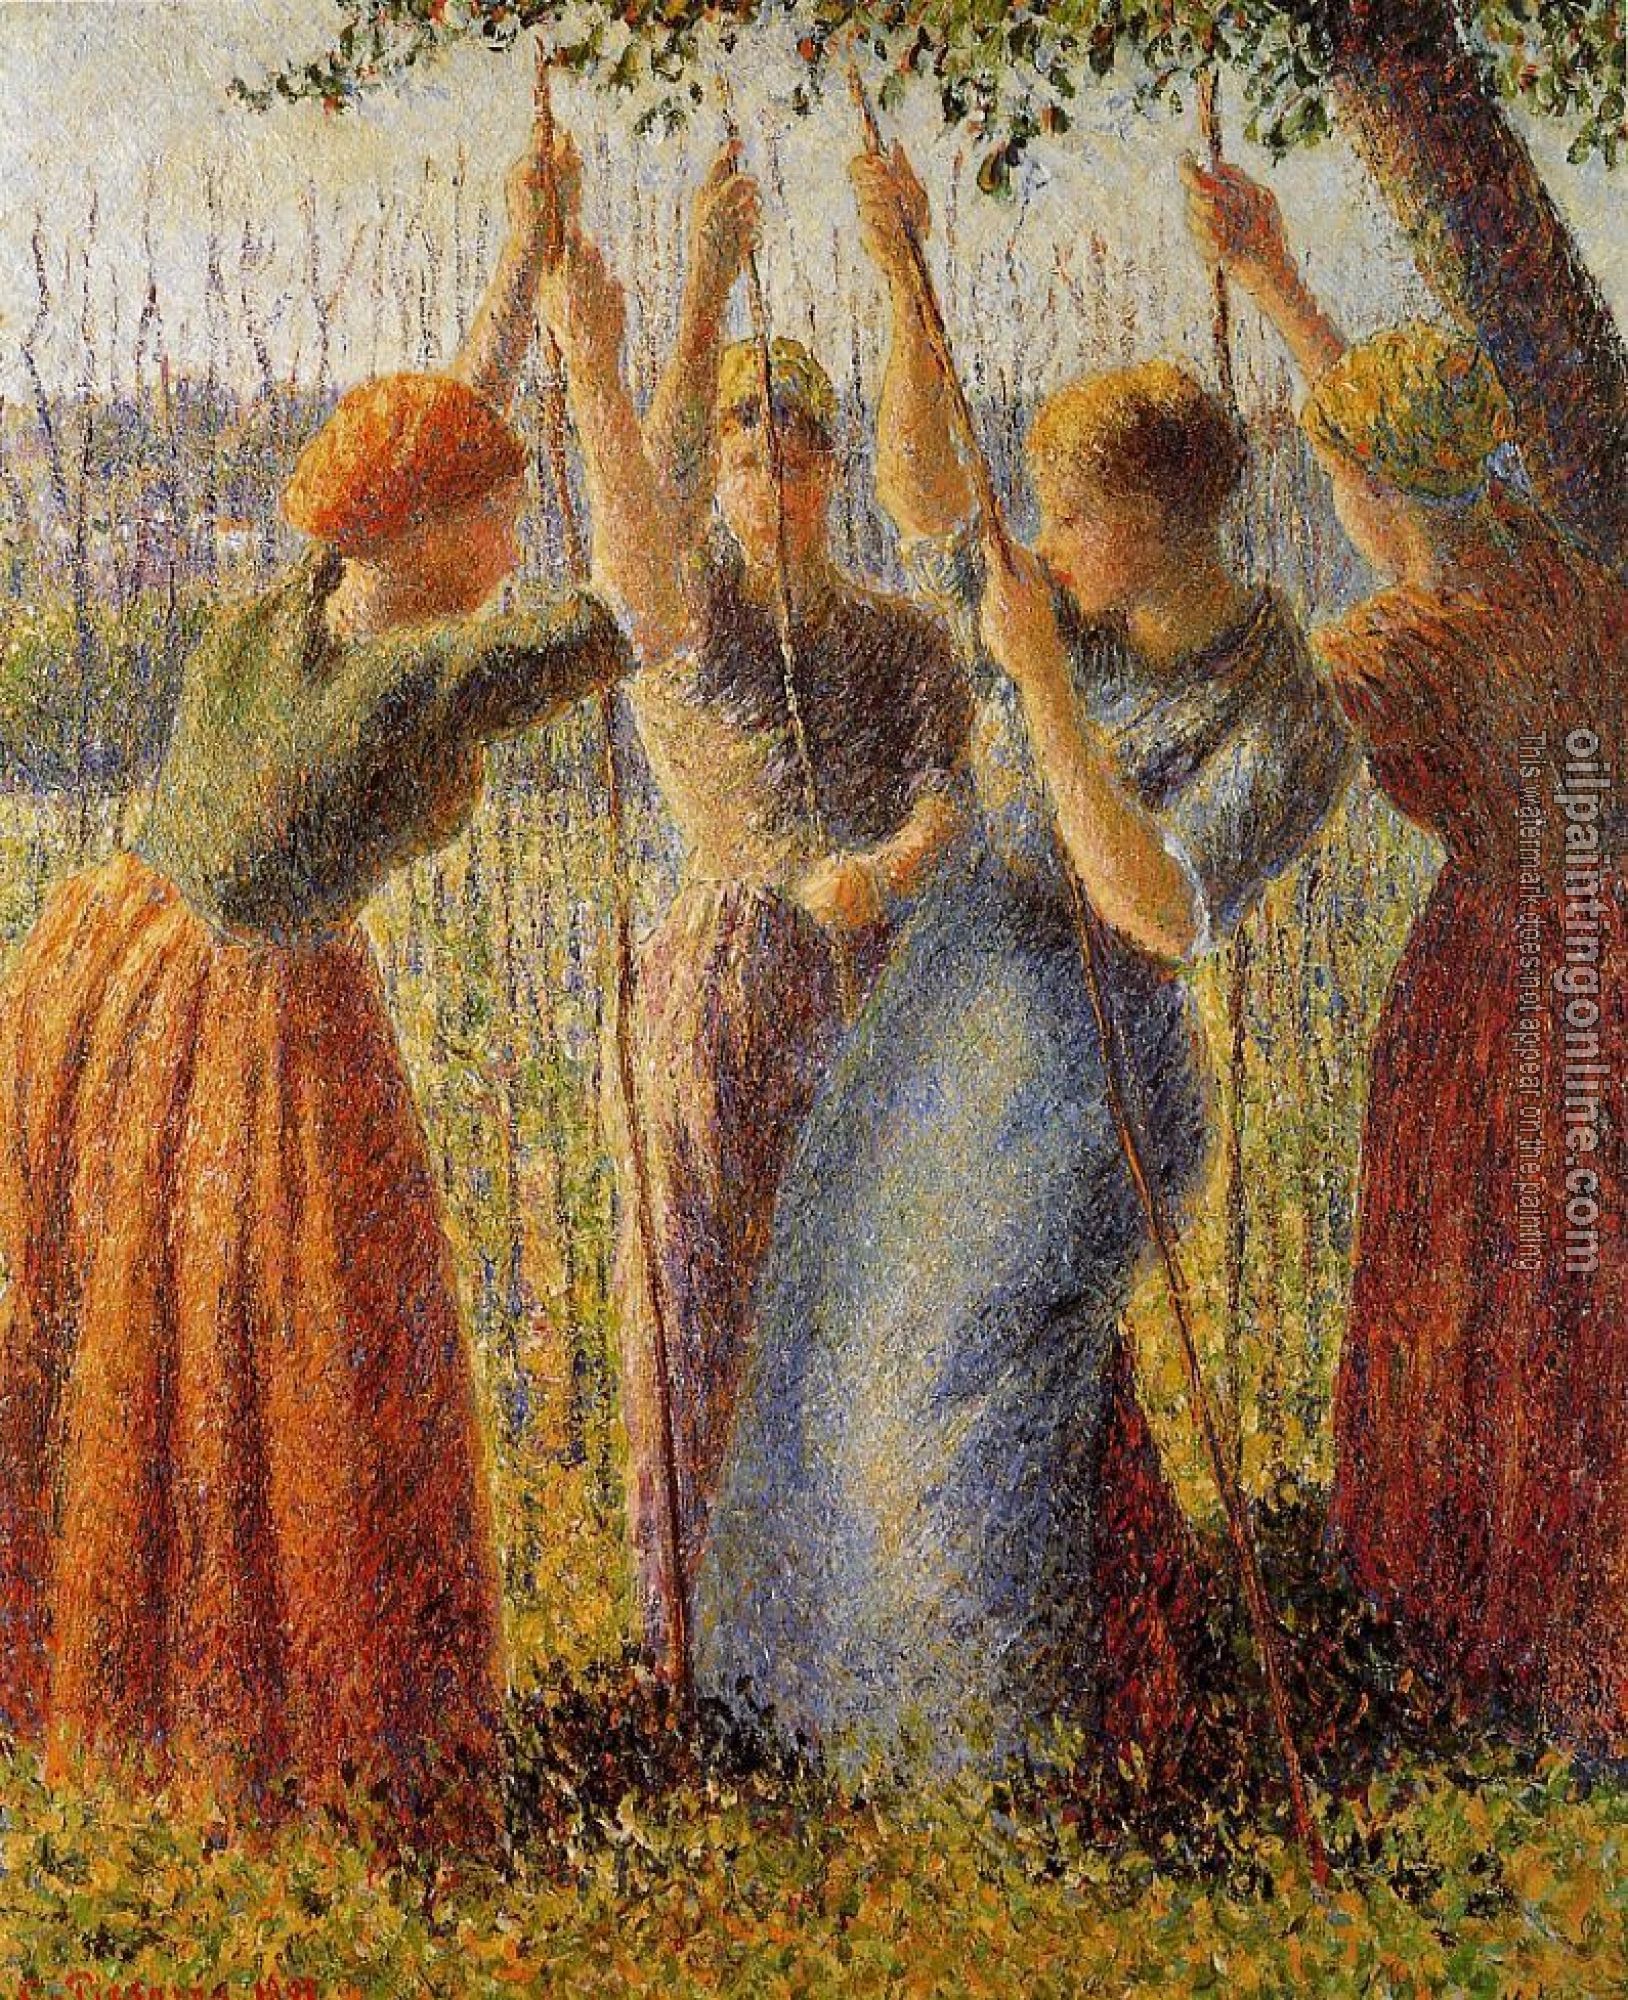 Pissarro, Camille - Peasants Planting Pea Sticks